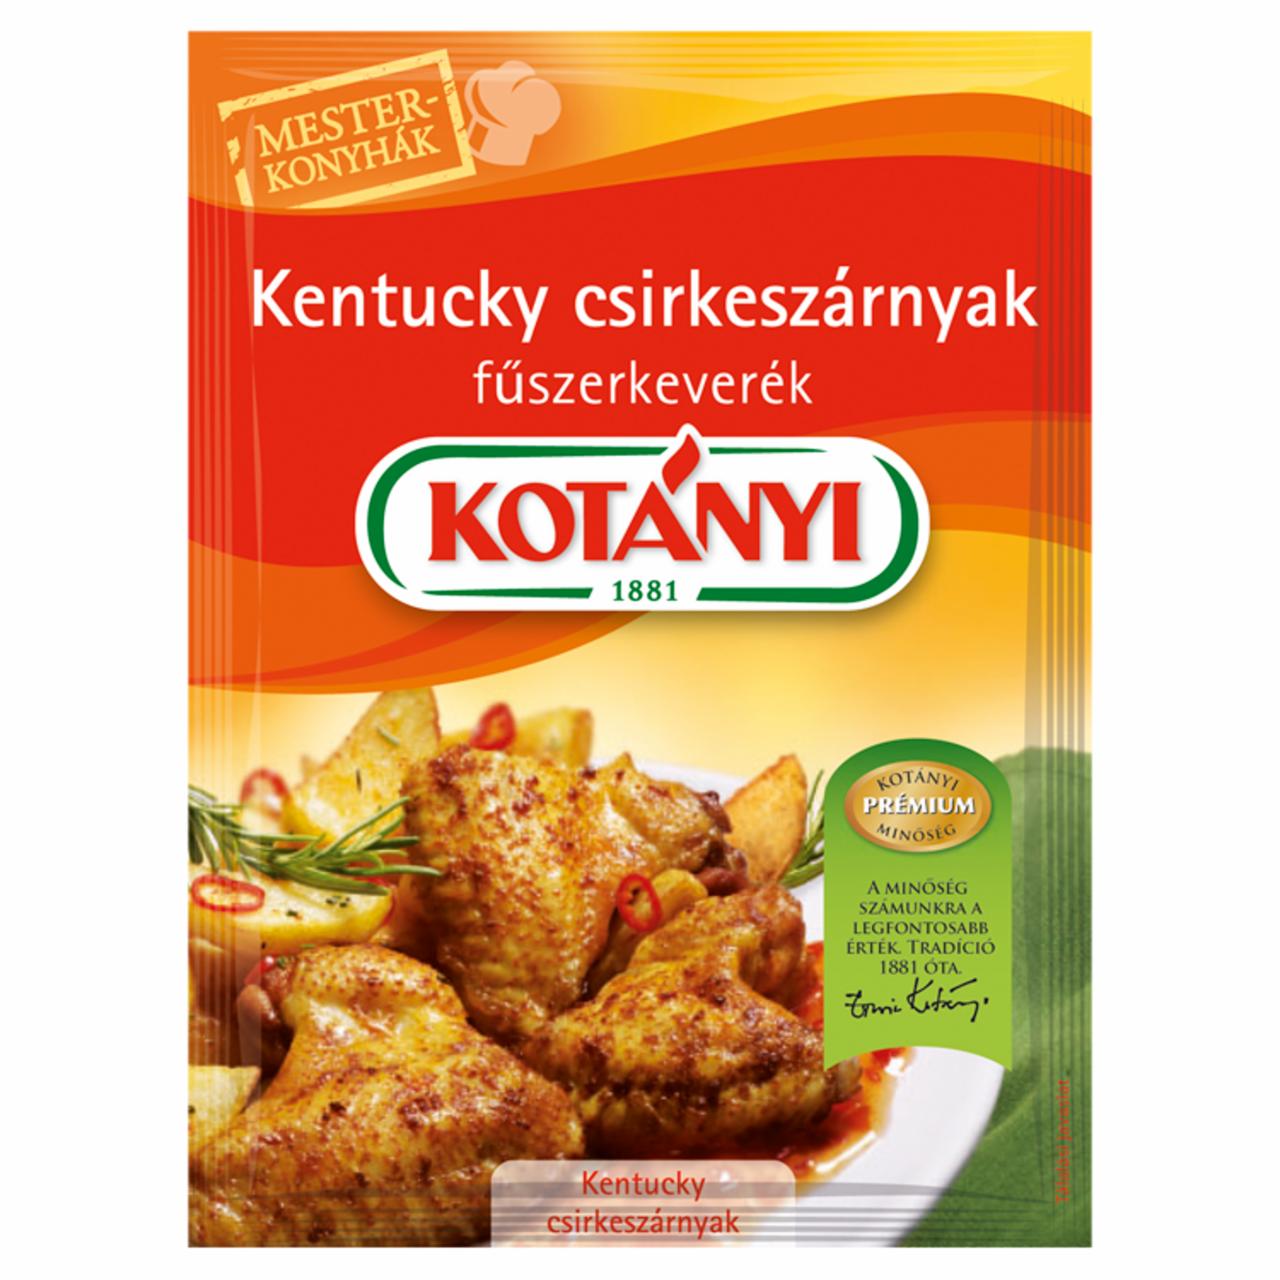 Képek - Kotányi Mesterkonyhák Kentucky csirkeszárnyak fűszerkeverék 45 g